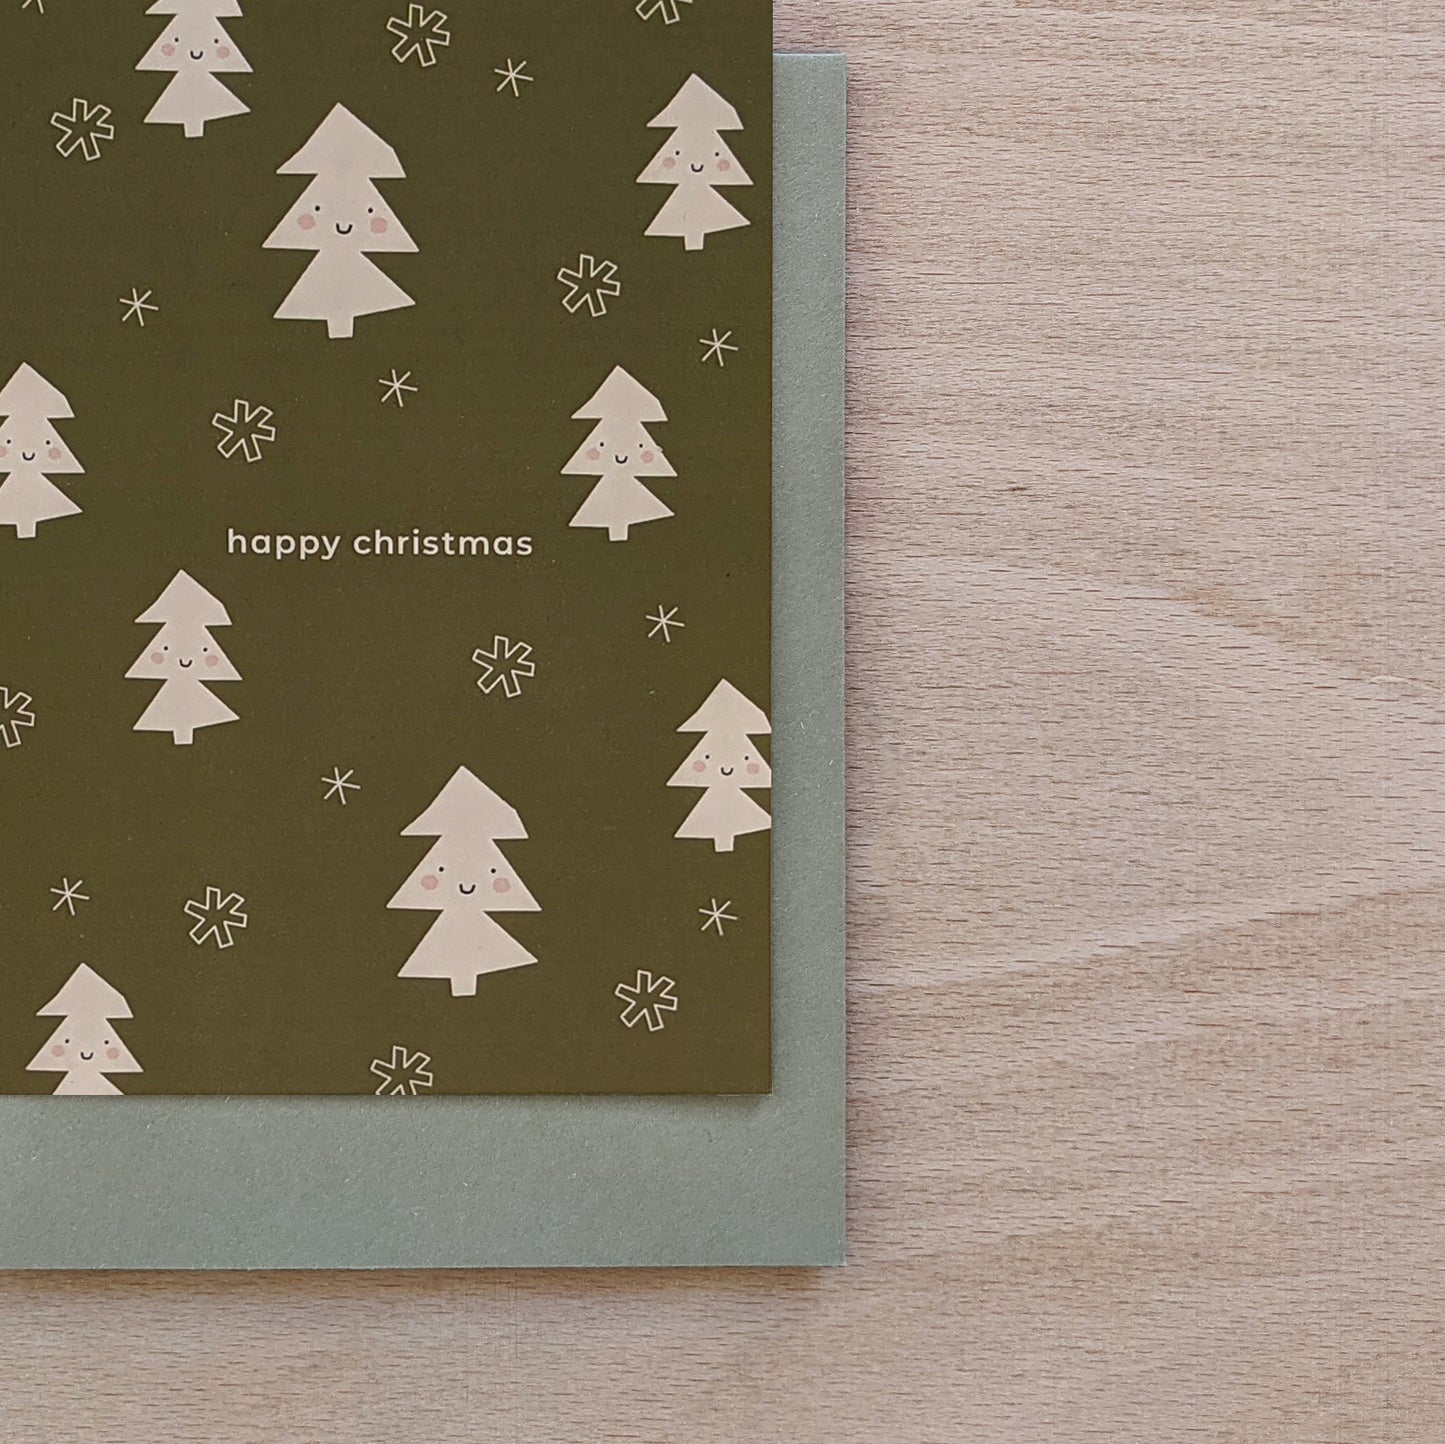 Happy Christmas, Christmas Card